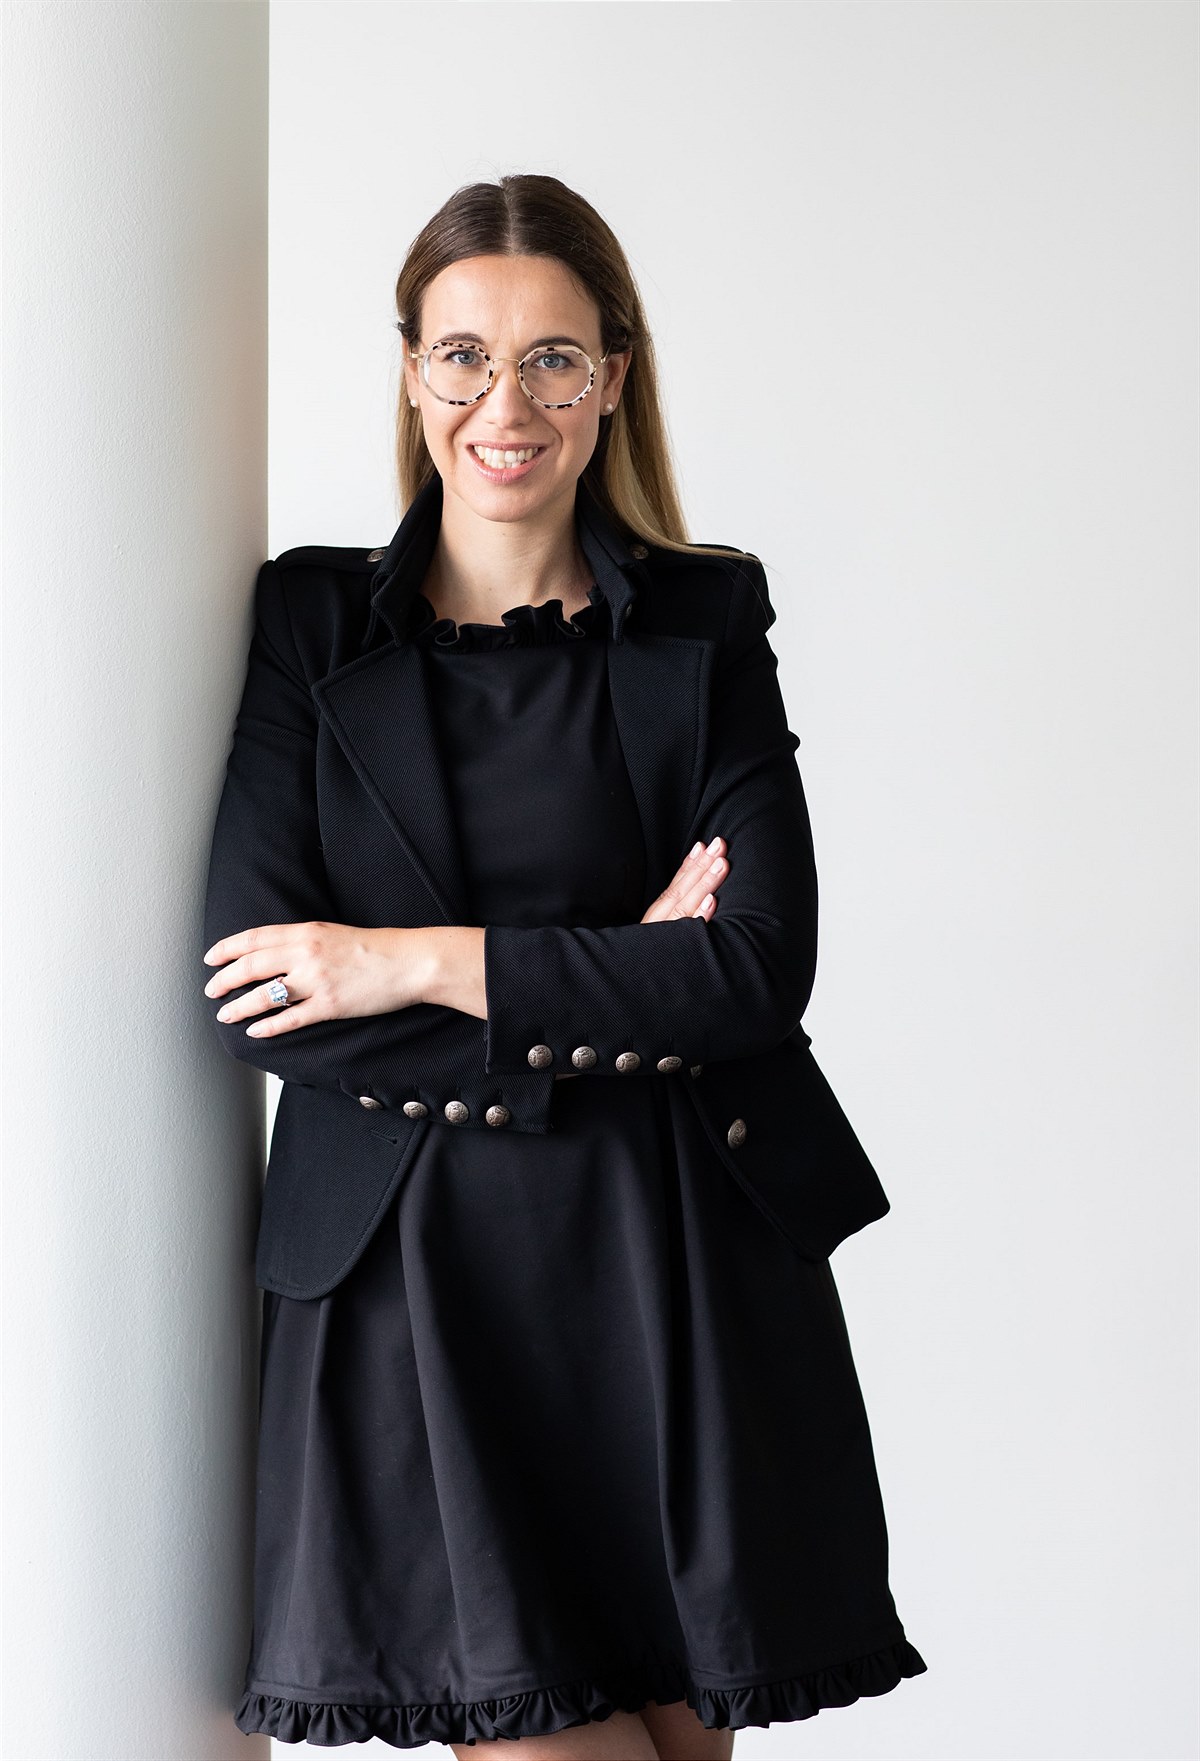 Philip Morris Austria hat eine neue Unternehmenssprecherin: Isabell Kisling-Steinek